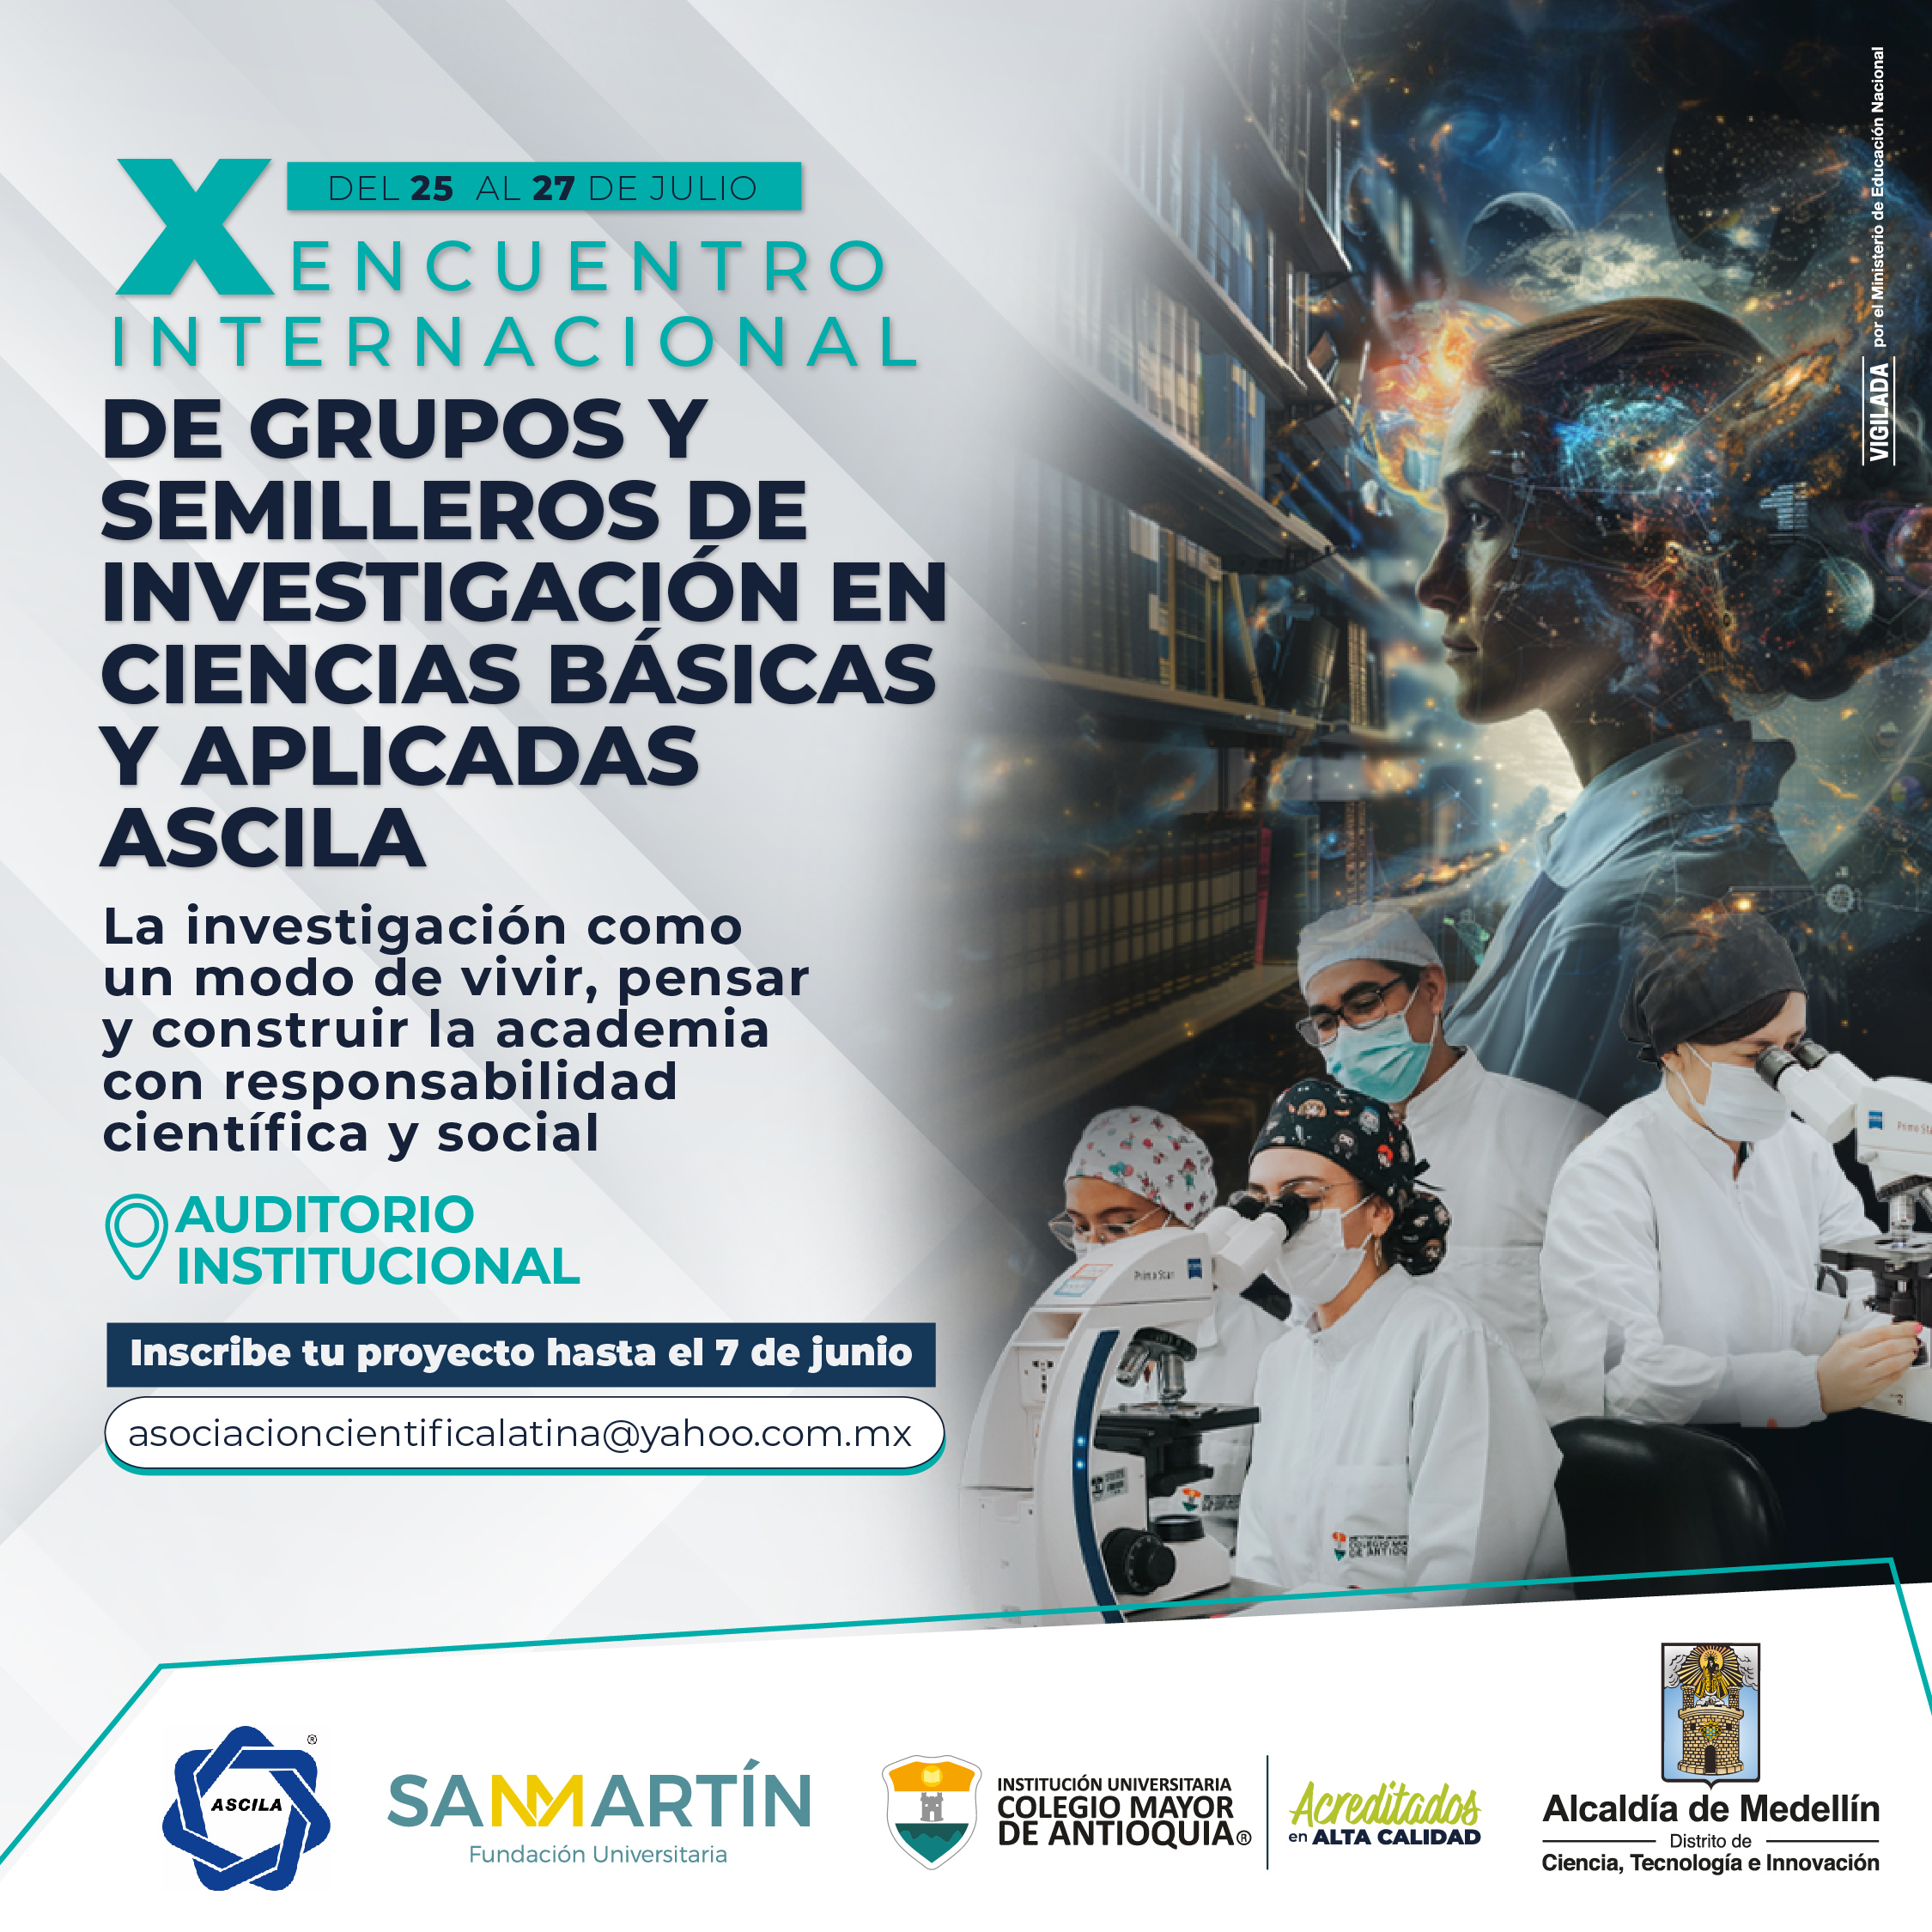 X Encuentro Internacional de Grupos y Semilleros de Investigación en Ciencias Básicas y Aplicadas / ASCILA